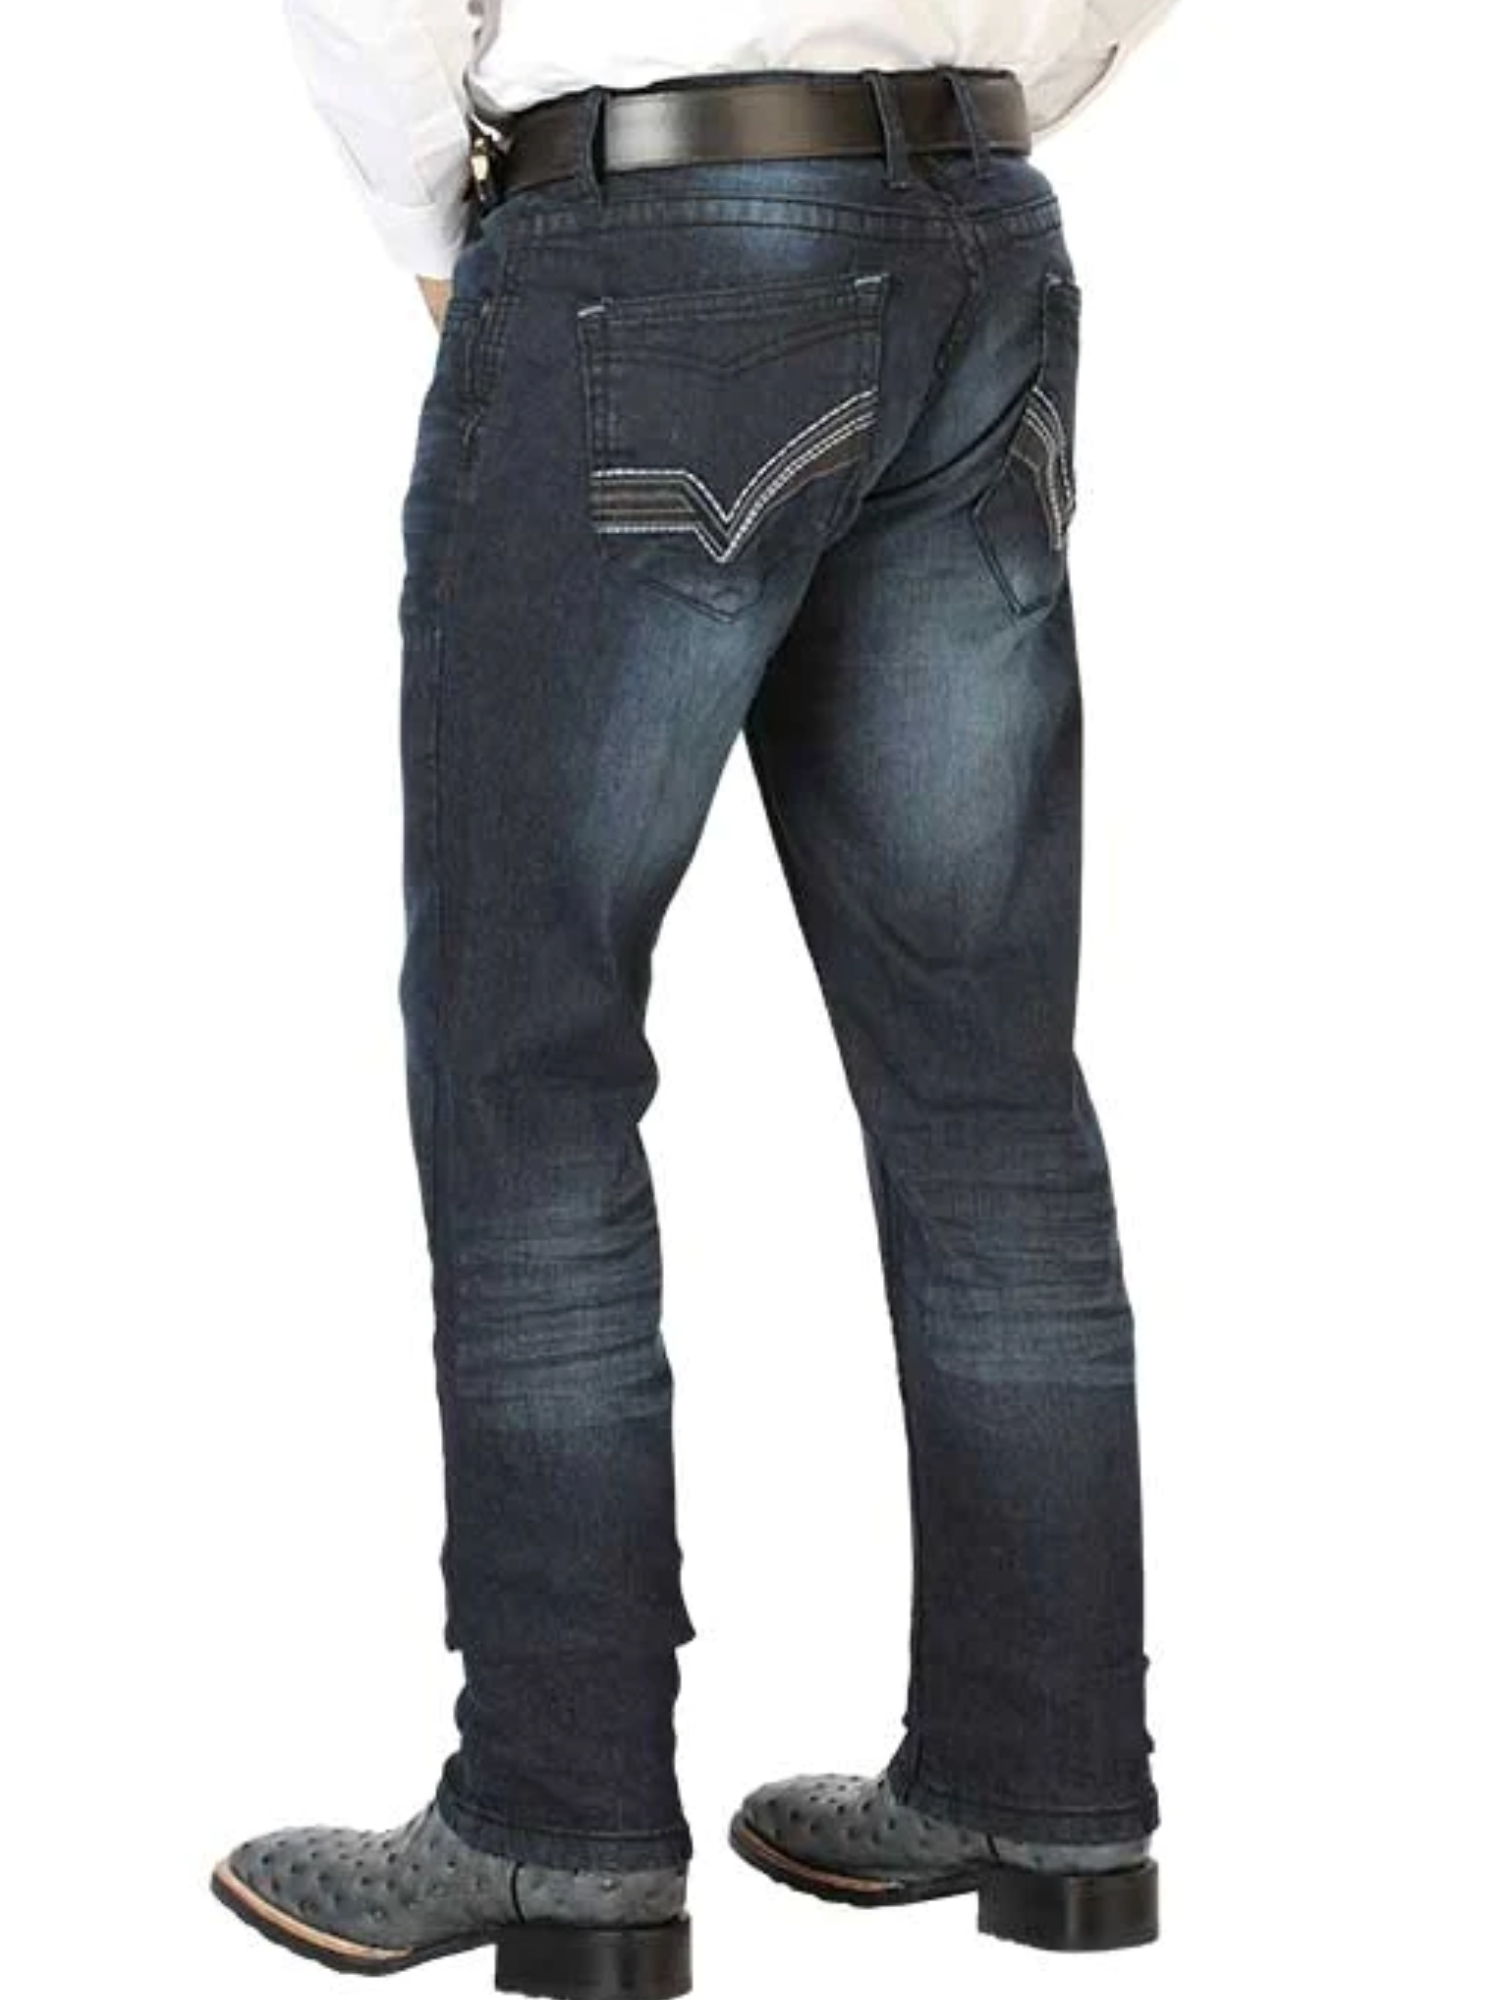 Pantalon Vaquero de Mezclilla Casual Azul Oscuro para Hombre 'El Norteño' - ID: 126634 Pantalones de Vaquero El Norteño 